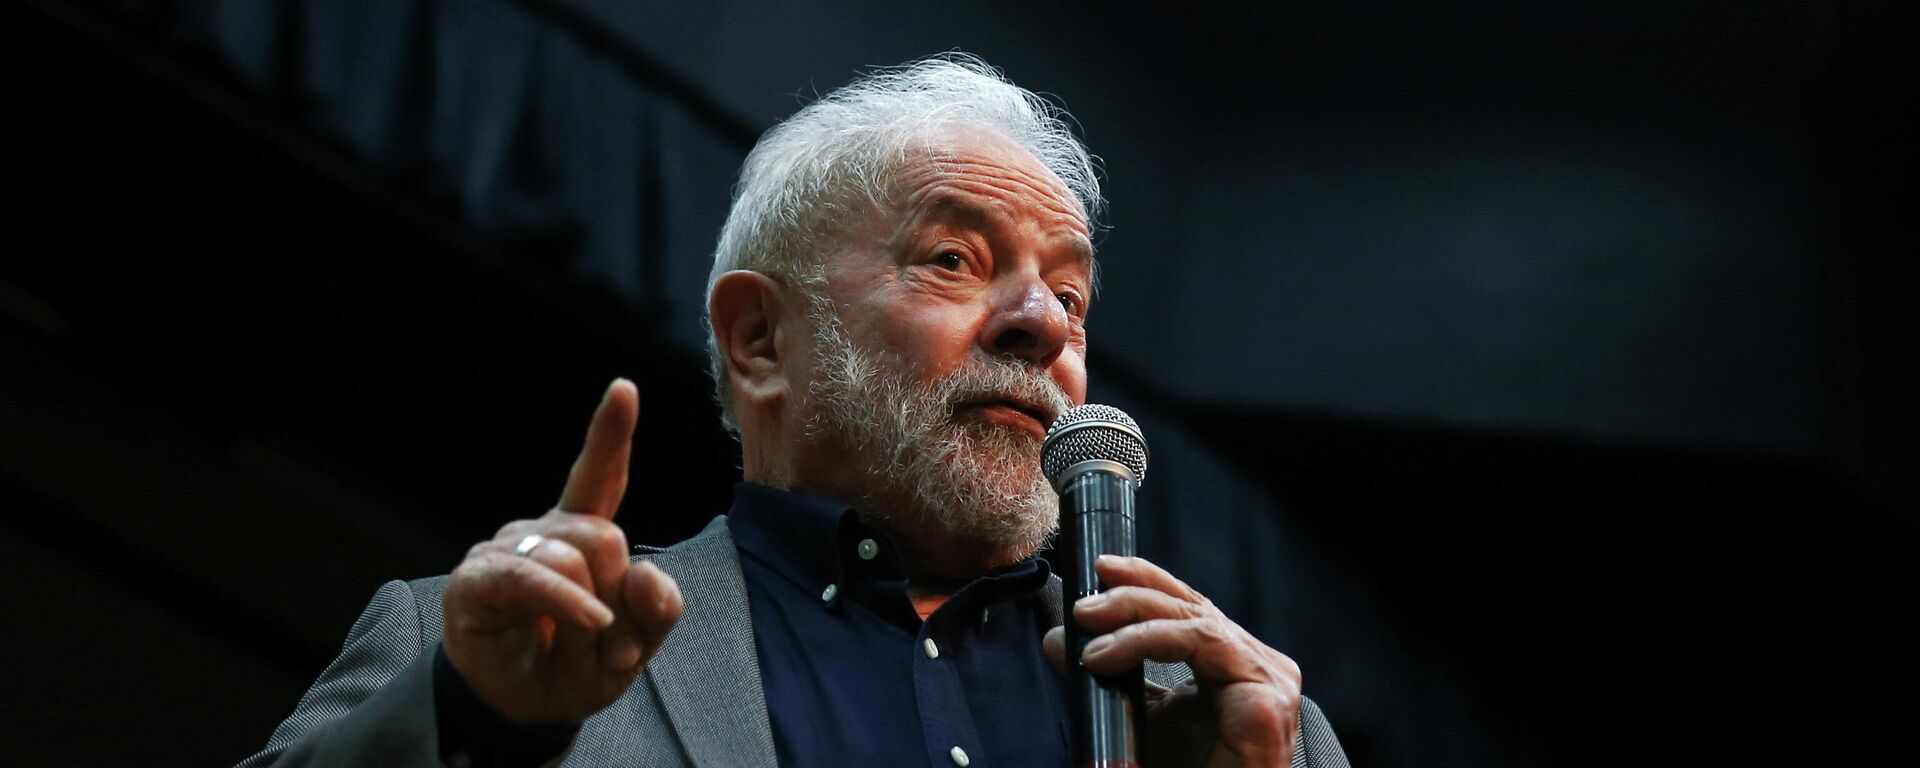 O ex-presidente Luiz Inácio Lula da Silva, em São Paulo, no Brasil, no dia 8 e dezembro de 2021 - Sputnik Brasil, 1920, 16.12.2021